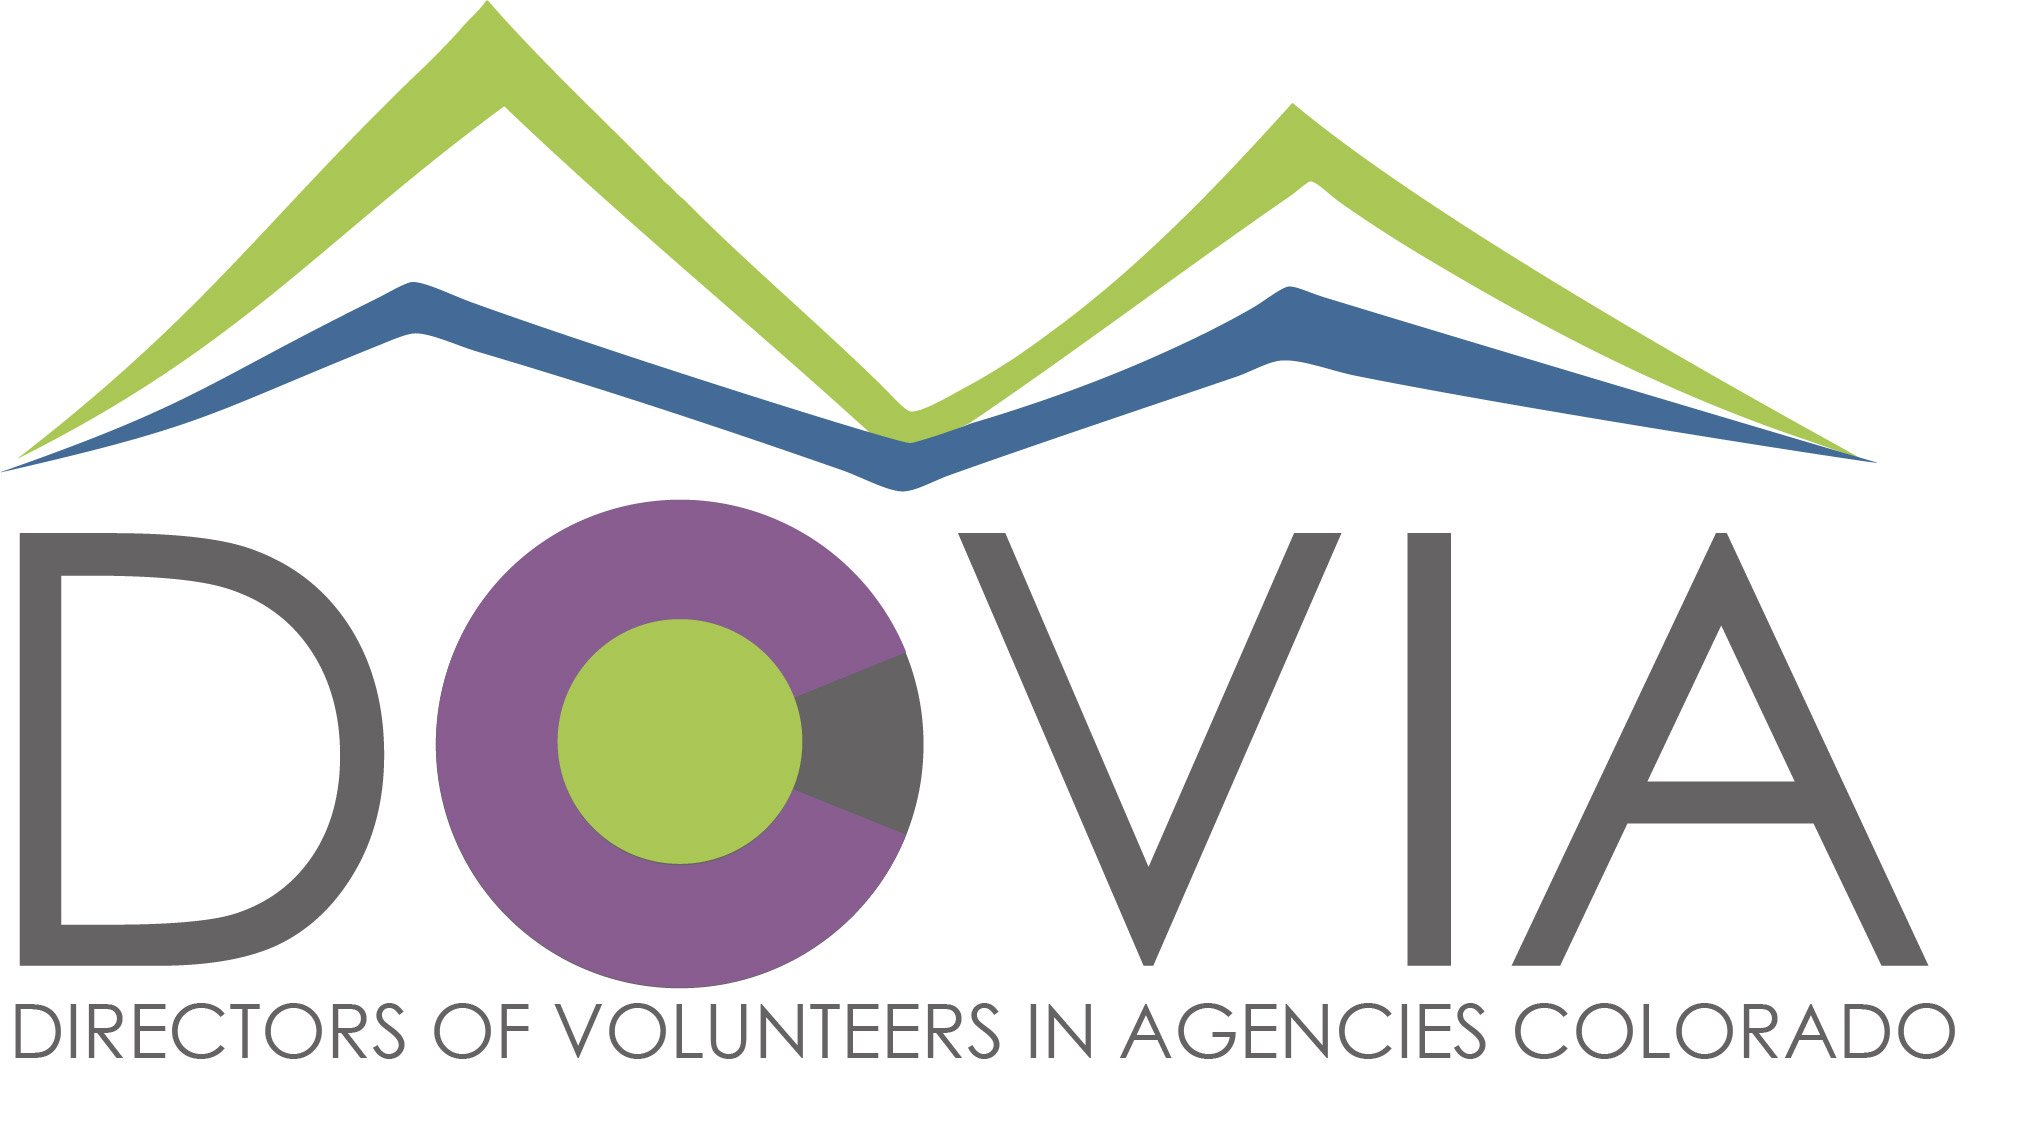 DOVIA Colorado logo